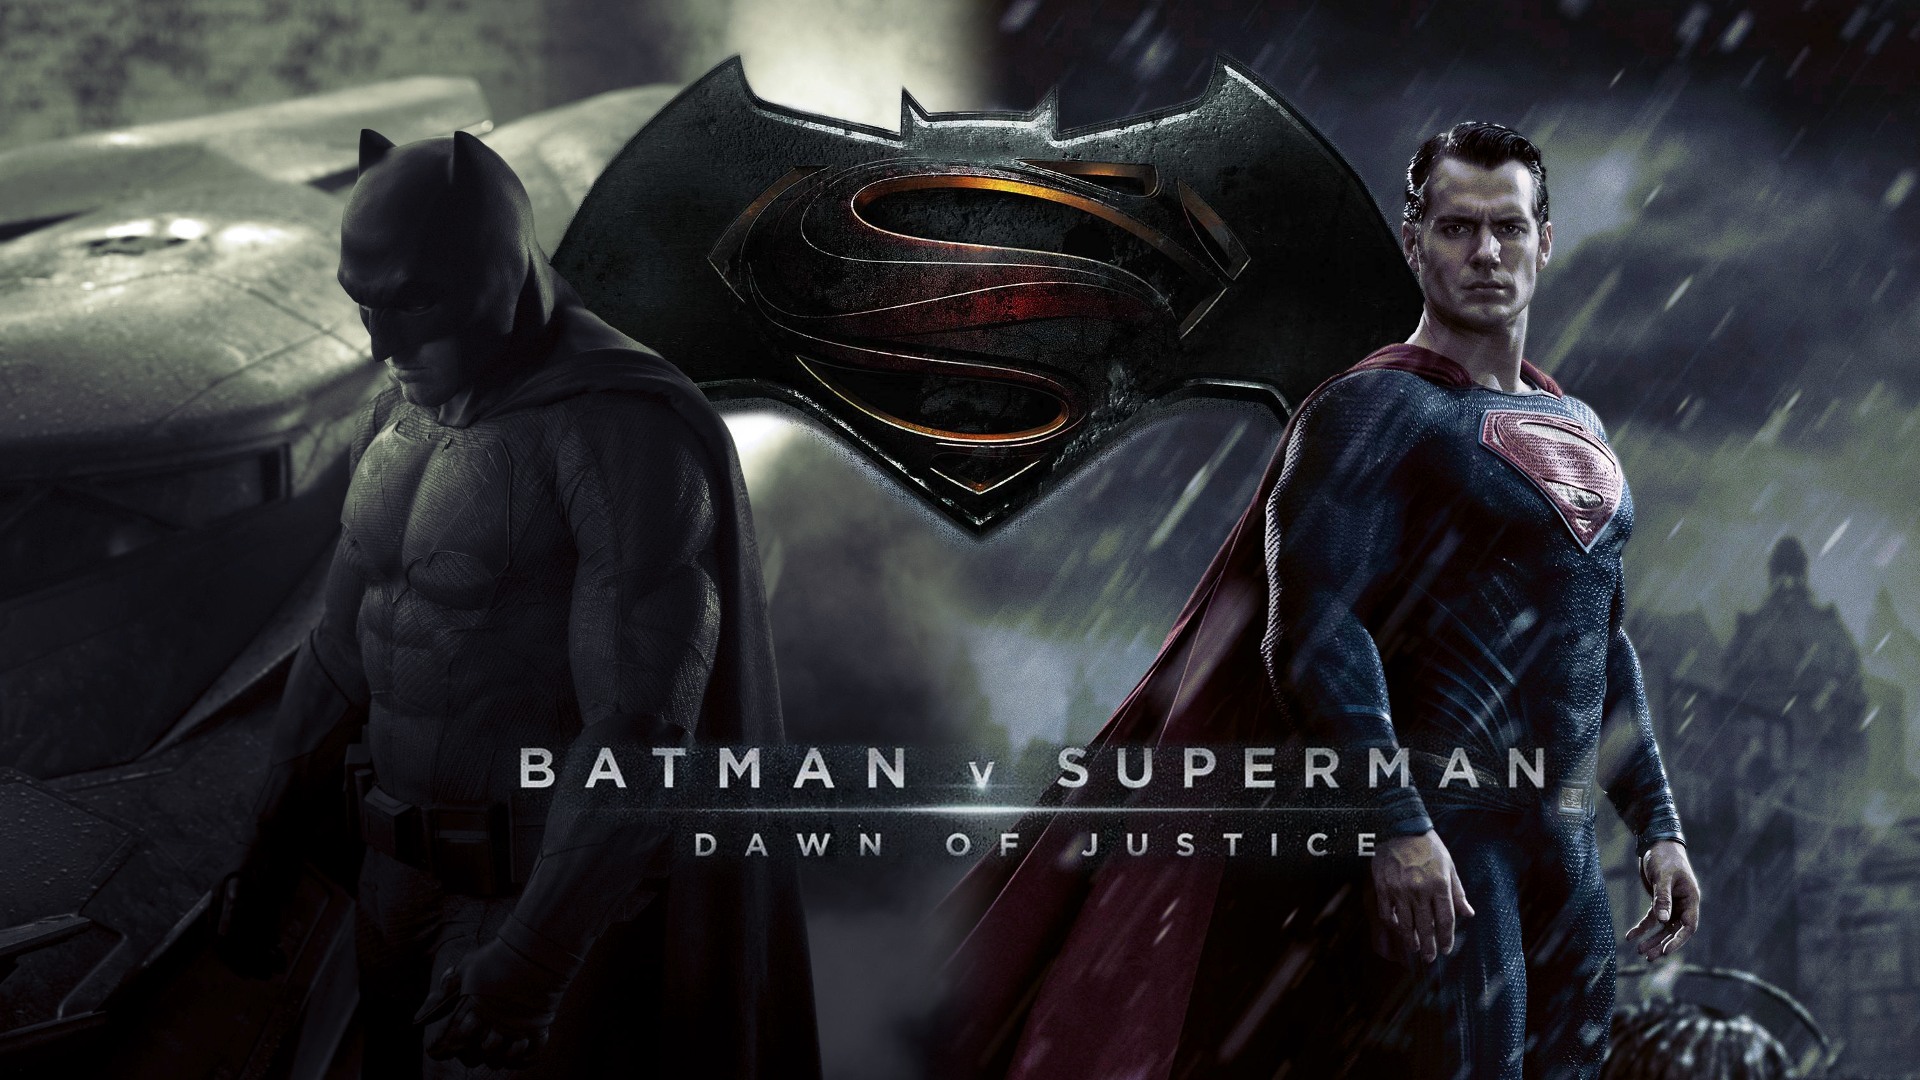 Download Wallpaper 1920x1080 Batman v superman dawn of justice ...